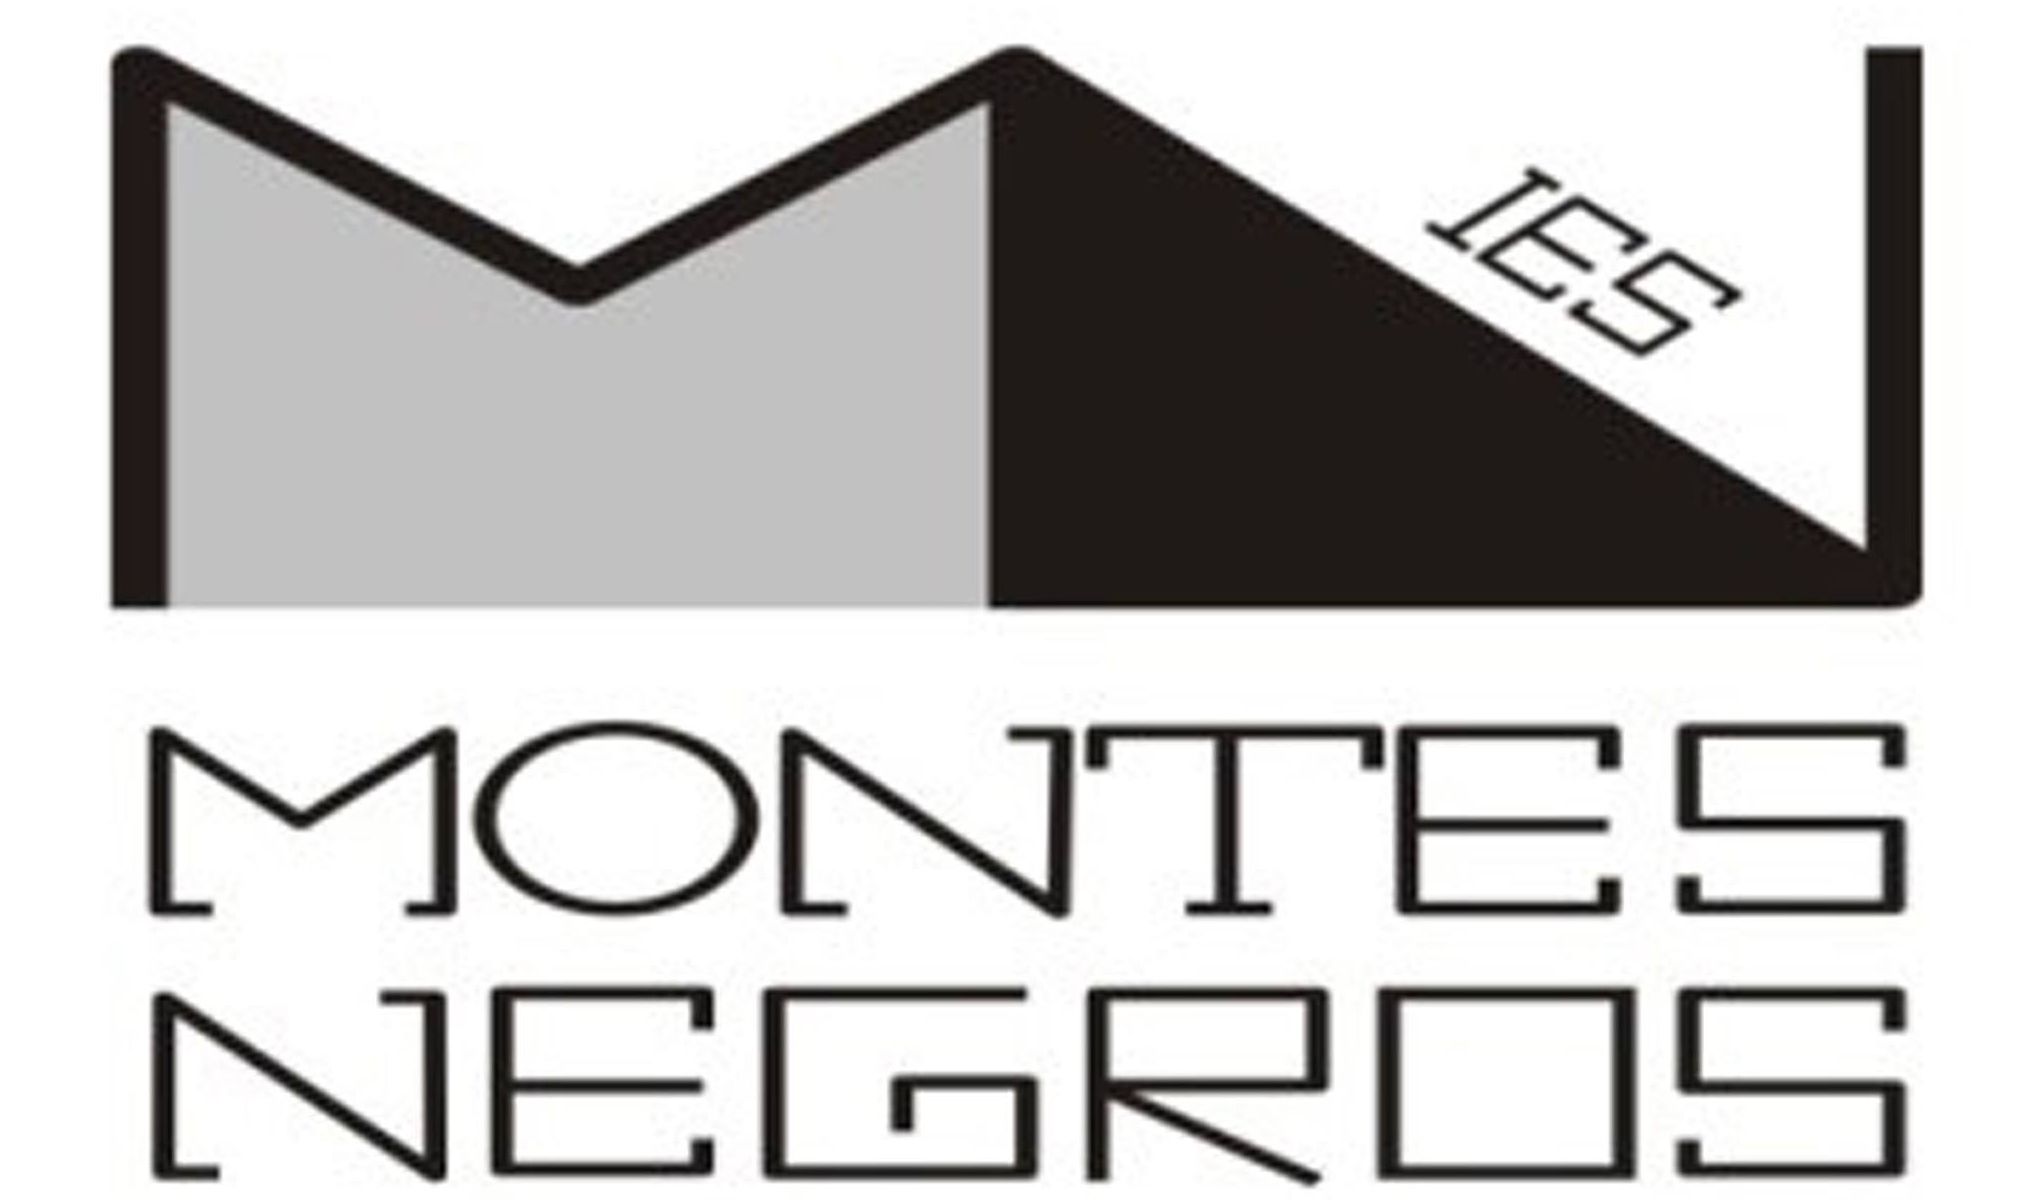 I.E.S. Montes Negros